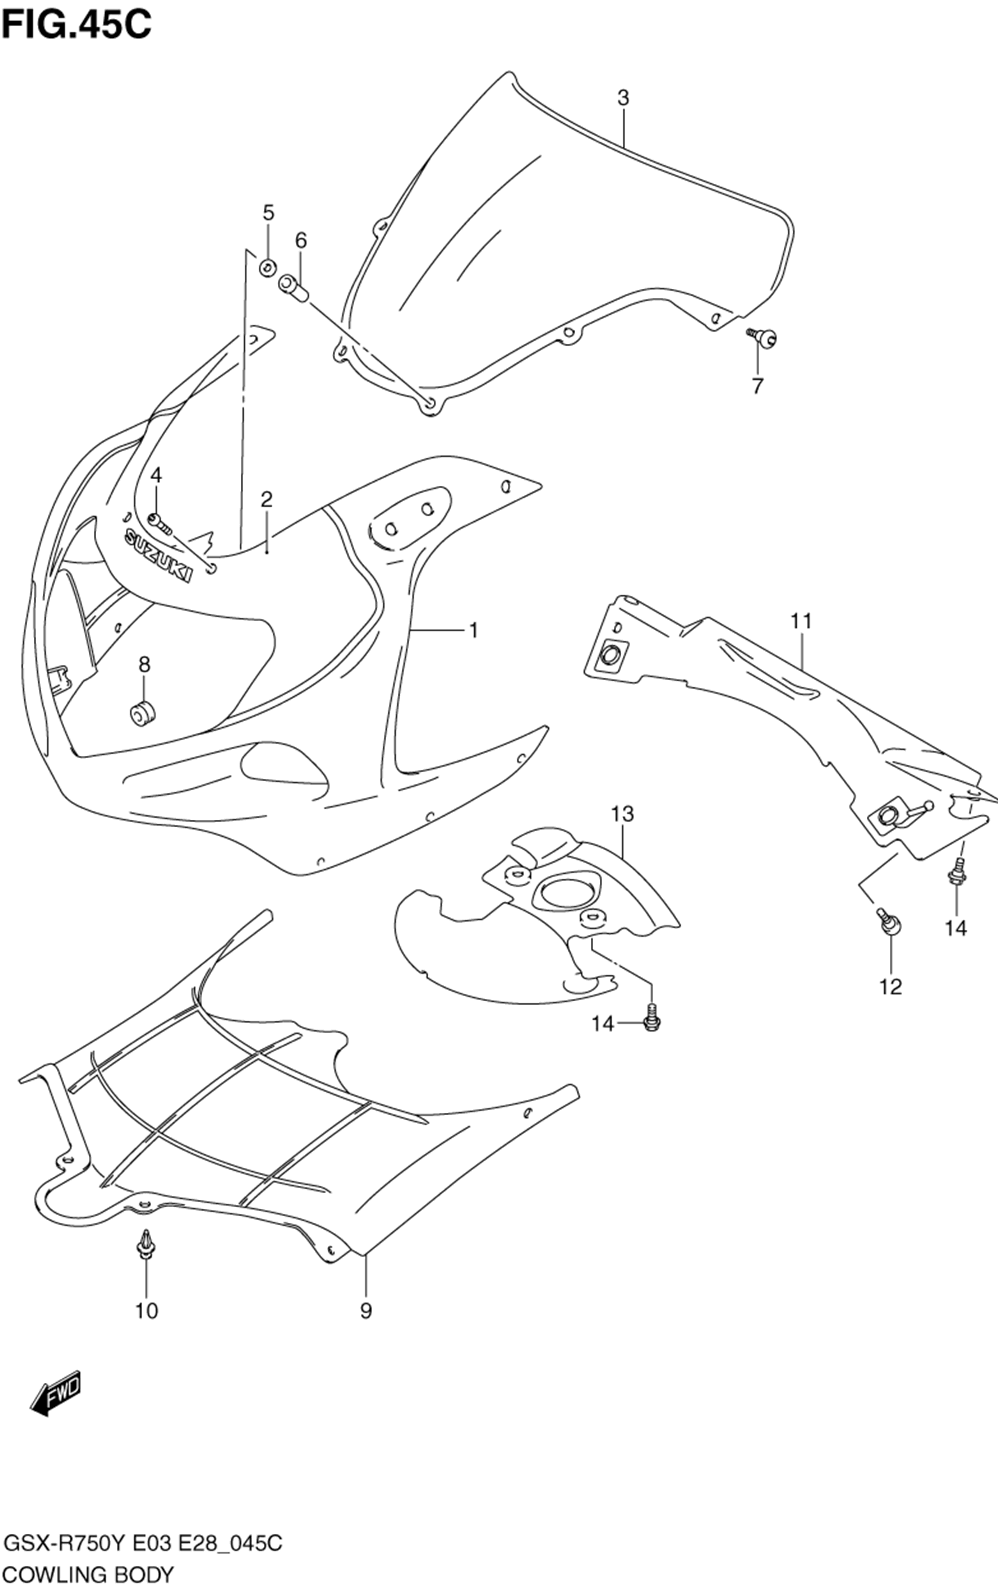 Cowling body (model k3)